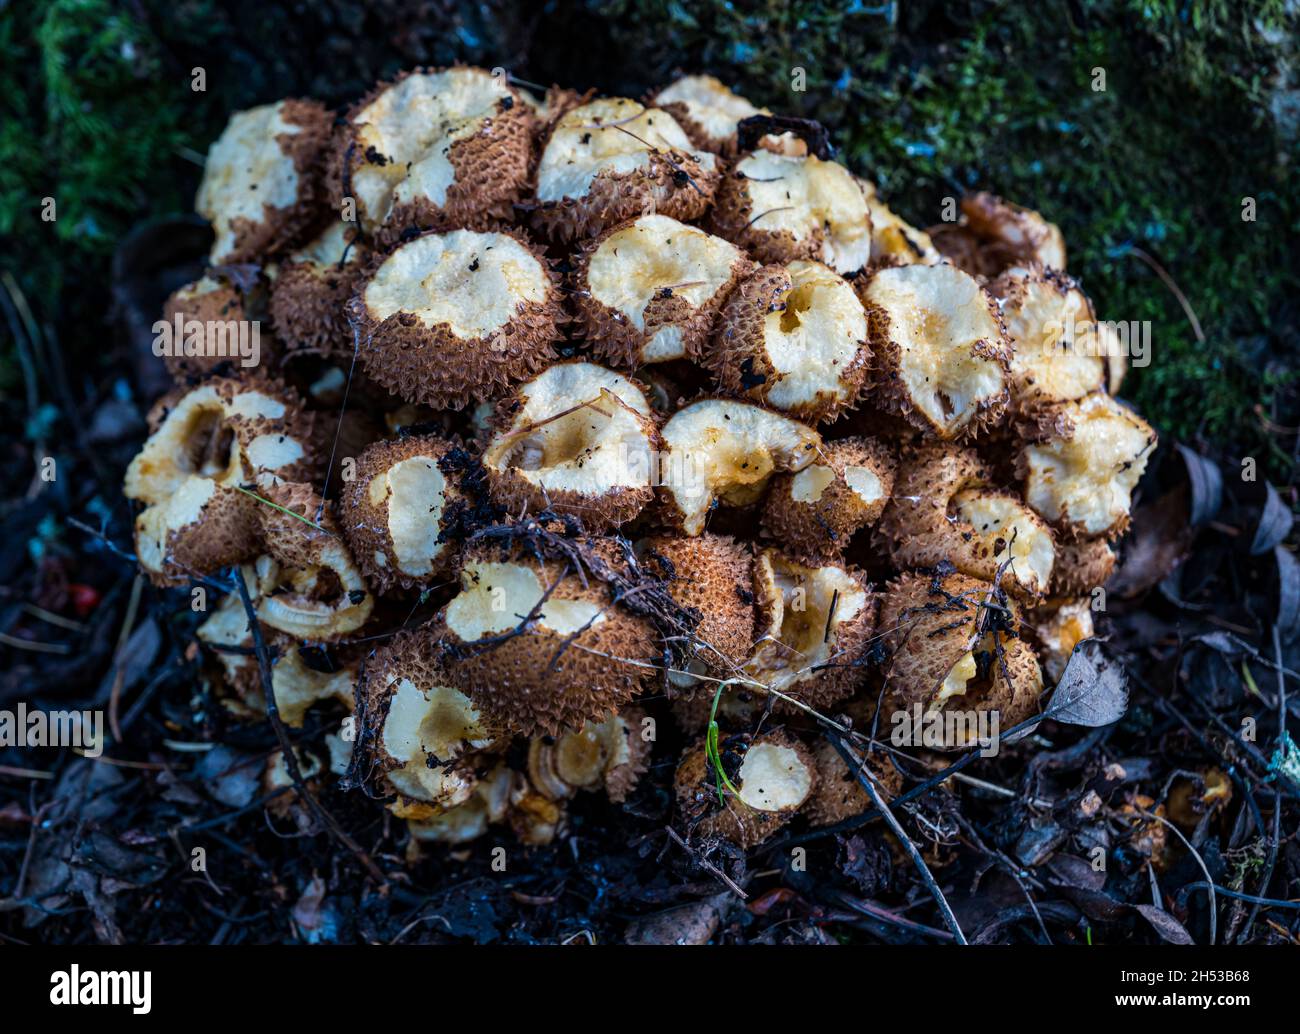 Un groupe de boulettes comestibles de souche (Lycoperdon pyriforme) à la base d'un arbre boisé avec des preuves d'être mangées, Écosse, Royaume-Uni Banque D'Images